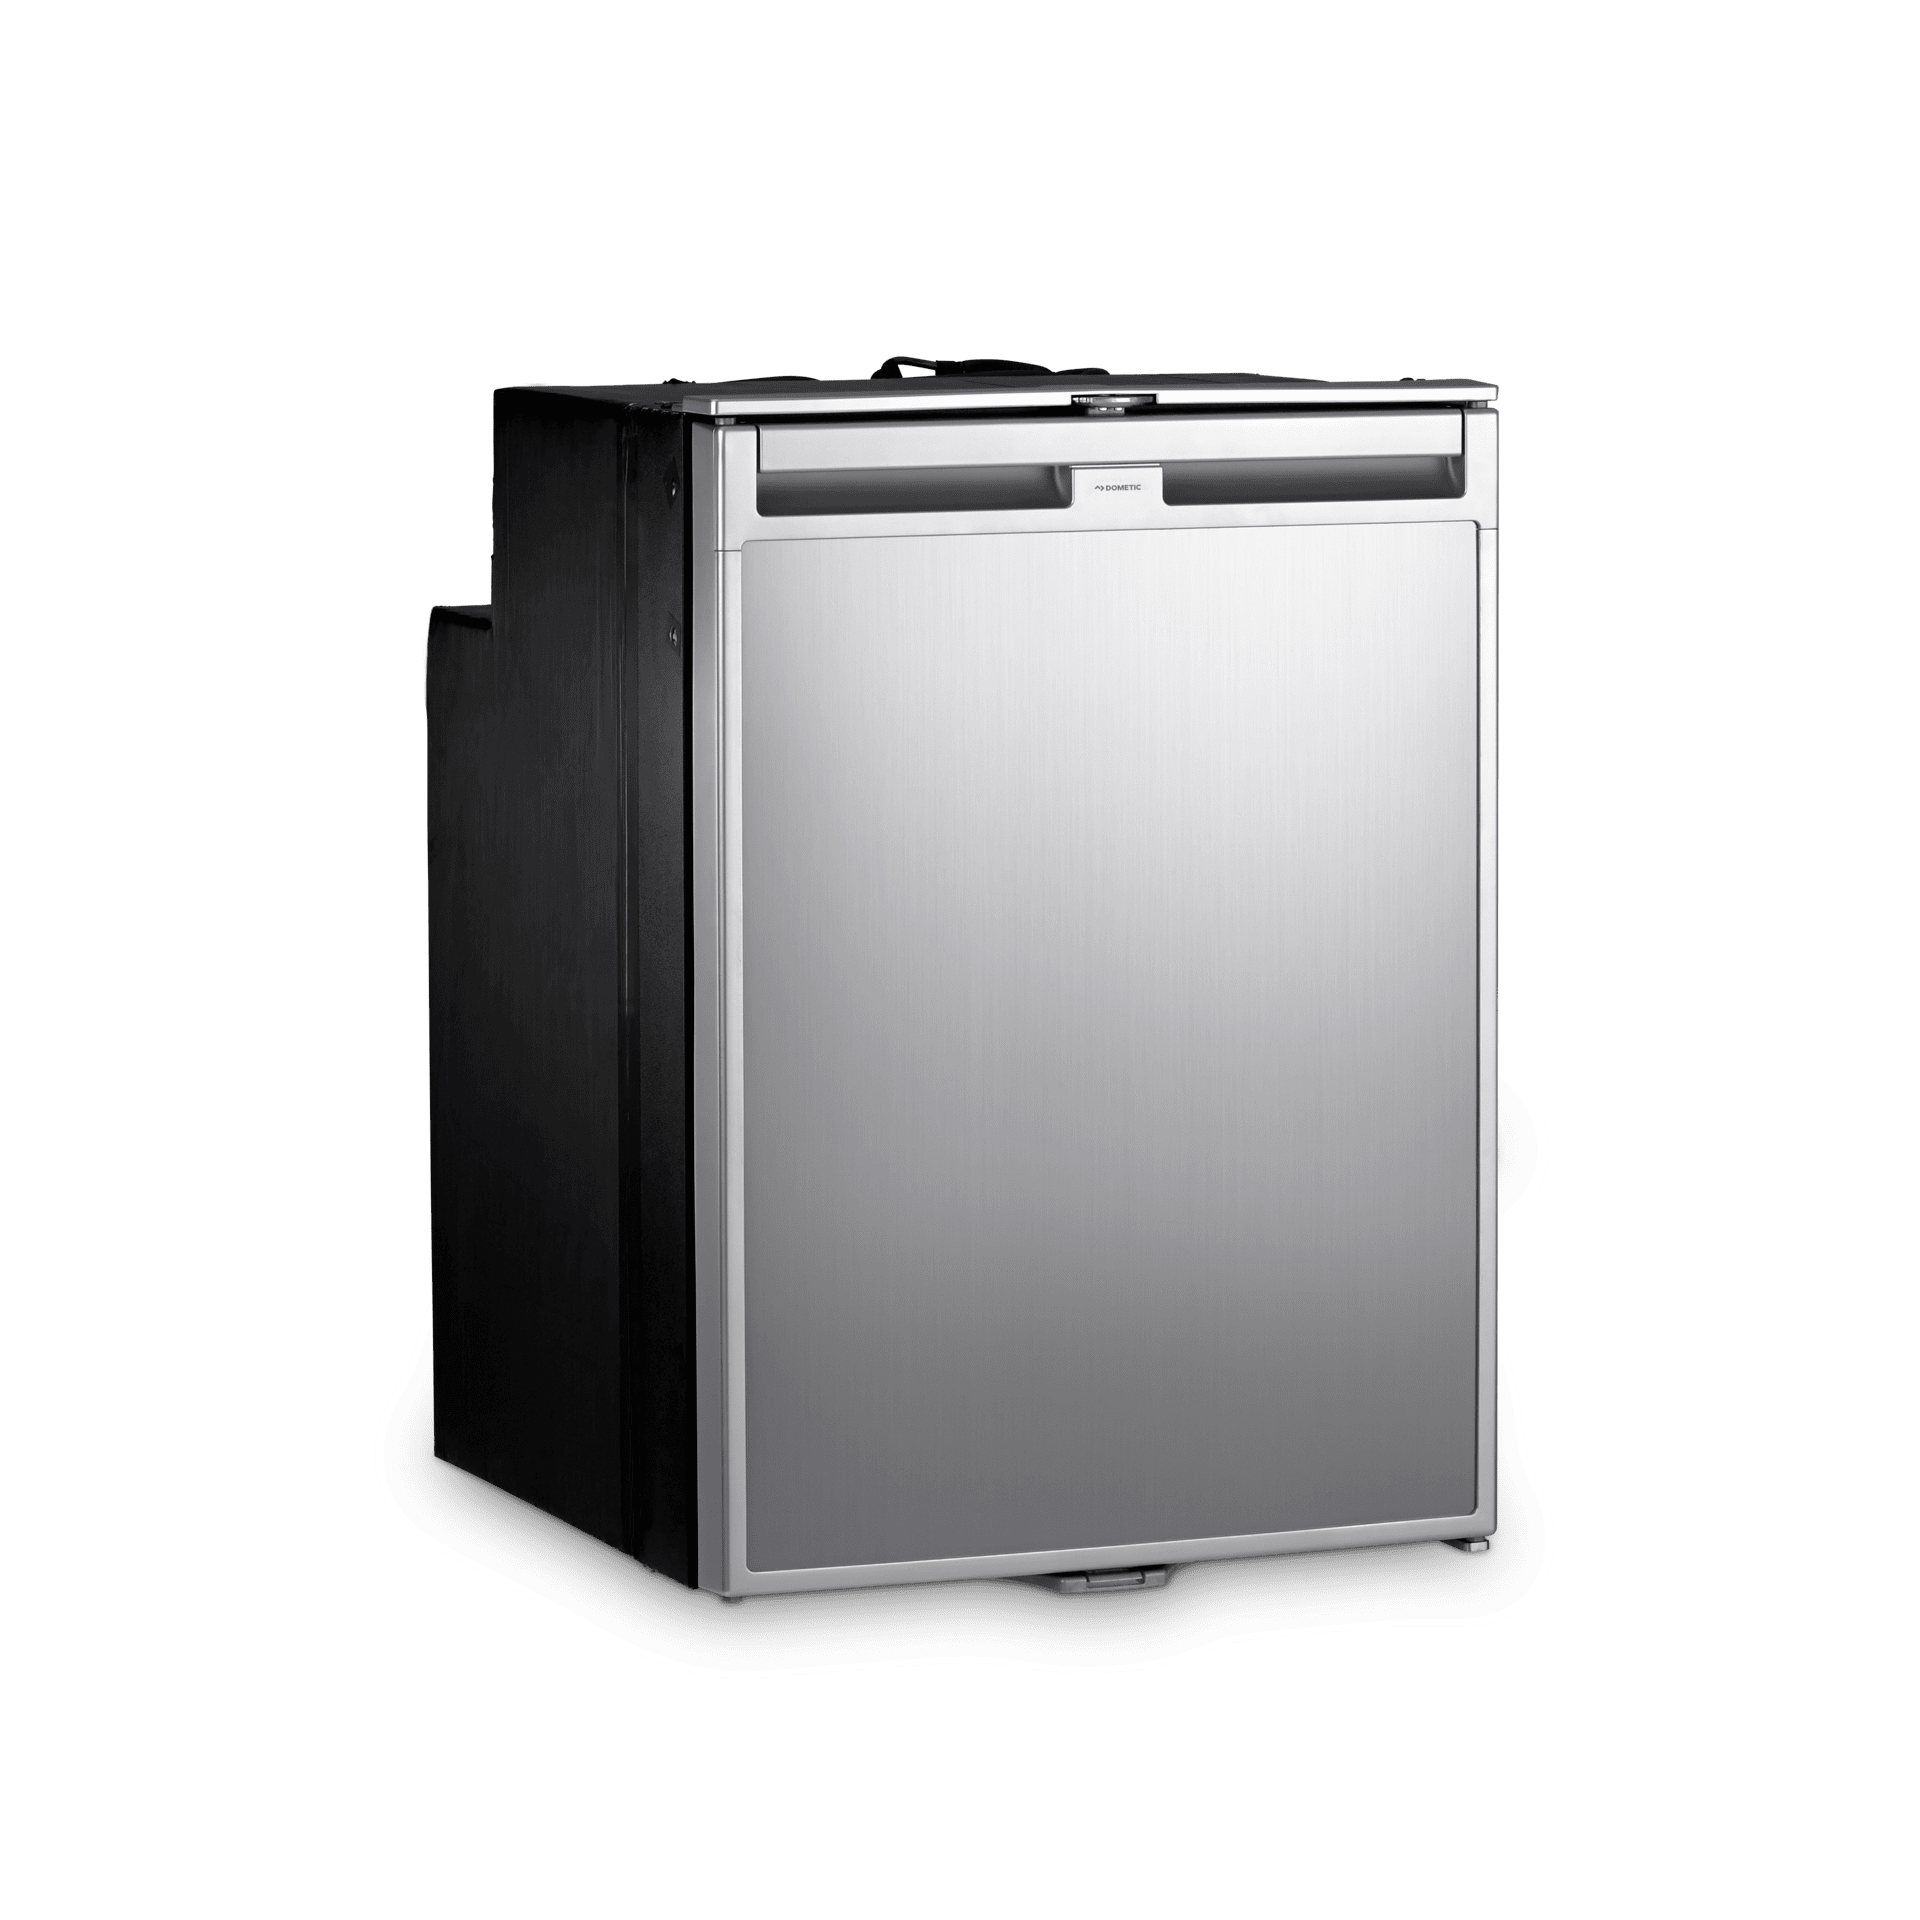 Dometic CRX 110E - Compressor Refrigerator, 3.8 cu ft, energy